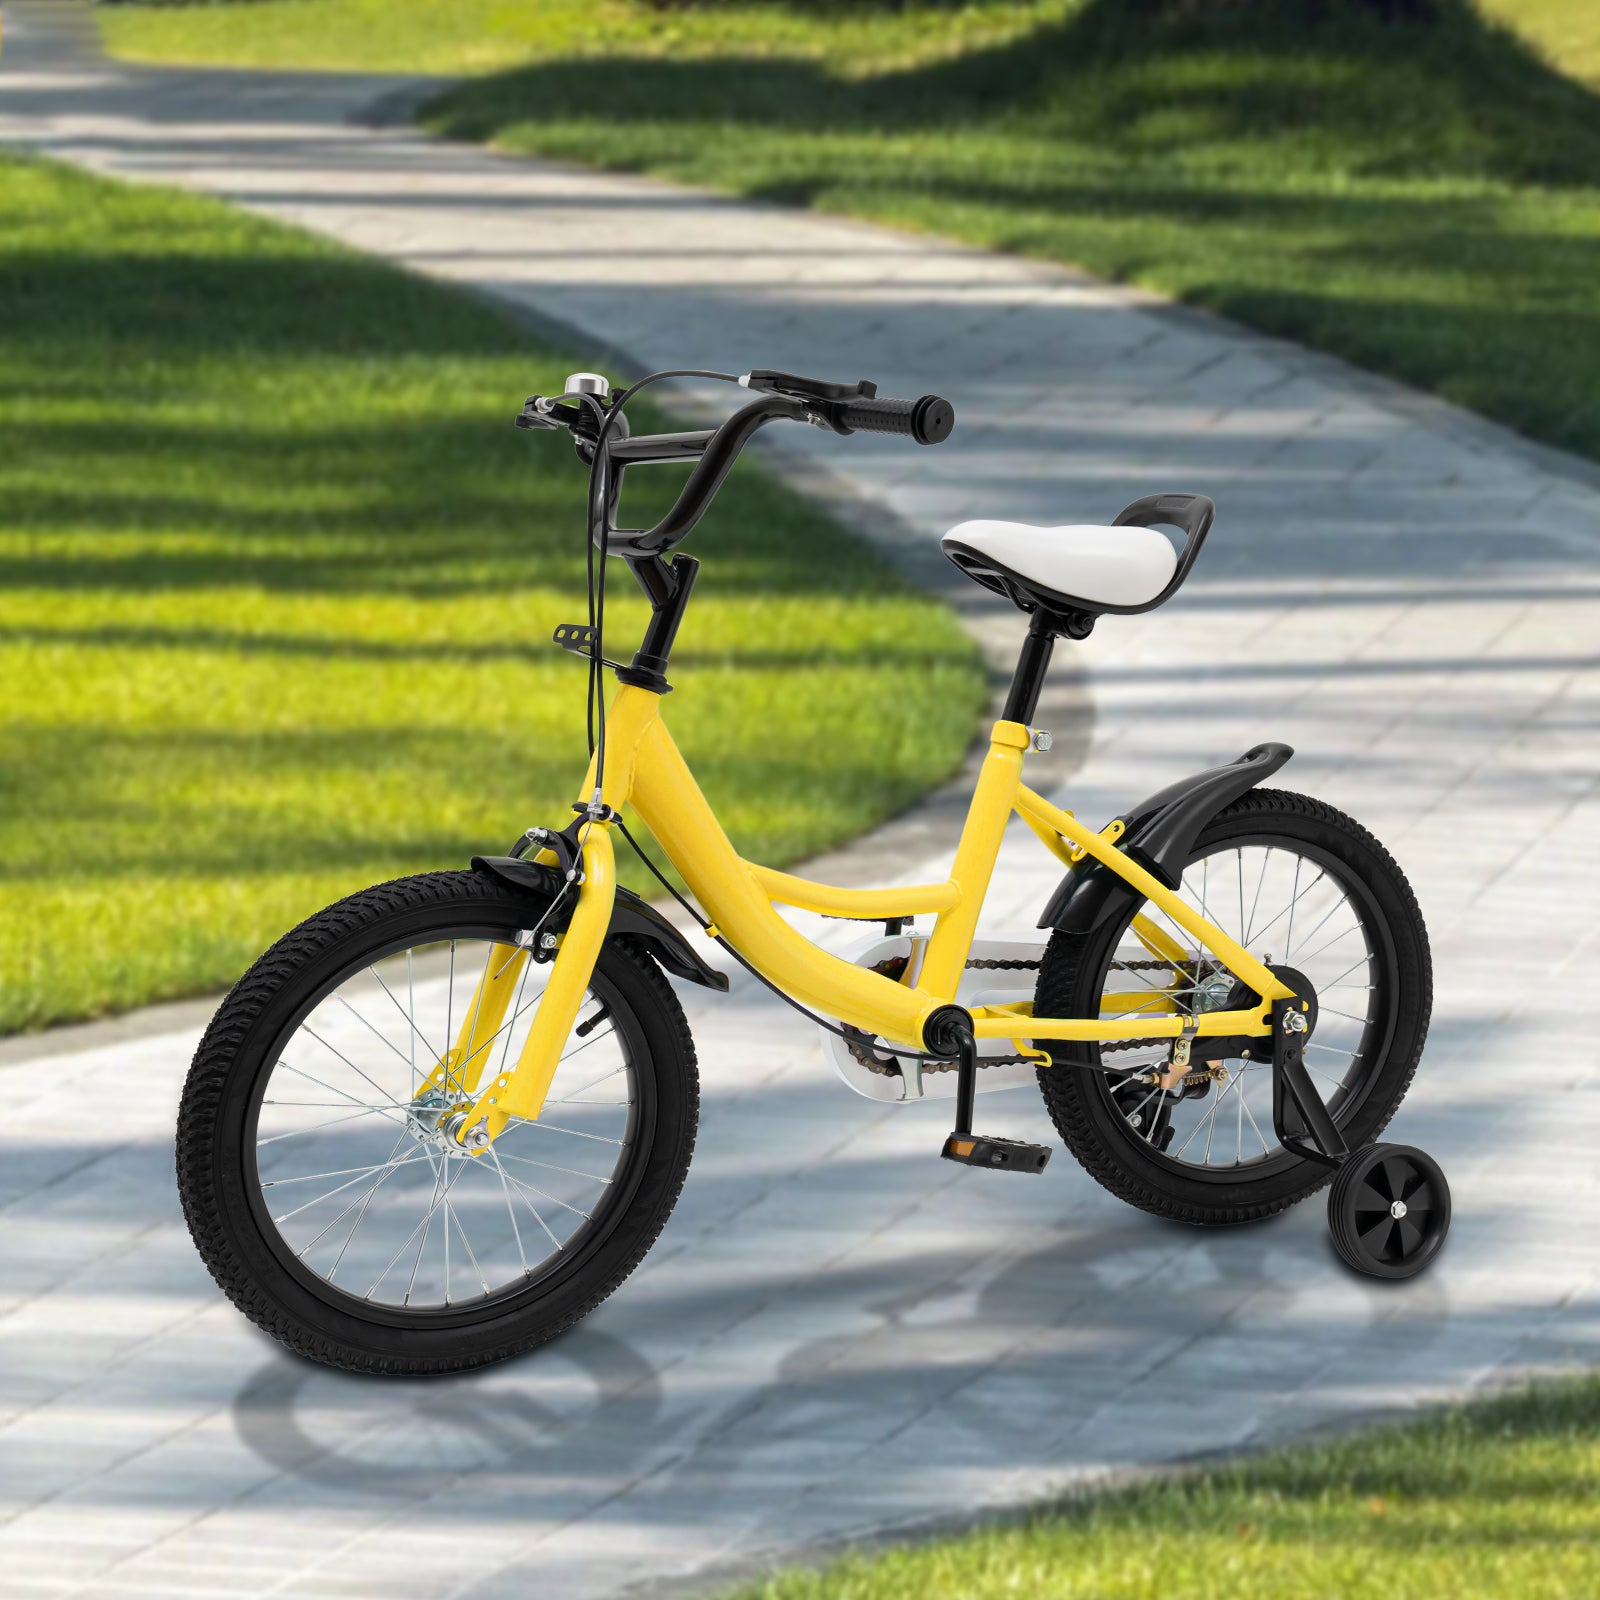 16 Pollici Bicicletta Bici per Bambini /Bambine con Ruota Ausiliaria 9,5 kg, Giallo Bici Regalo